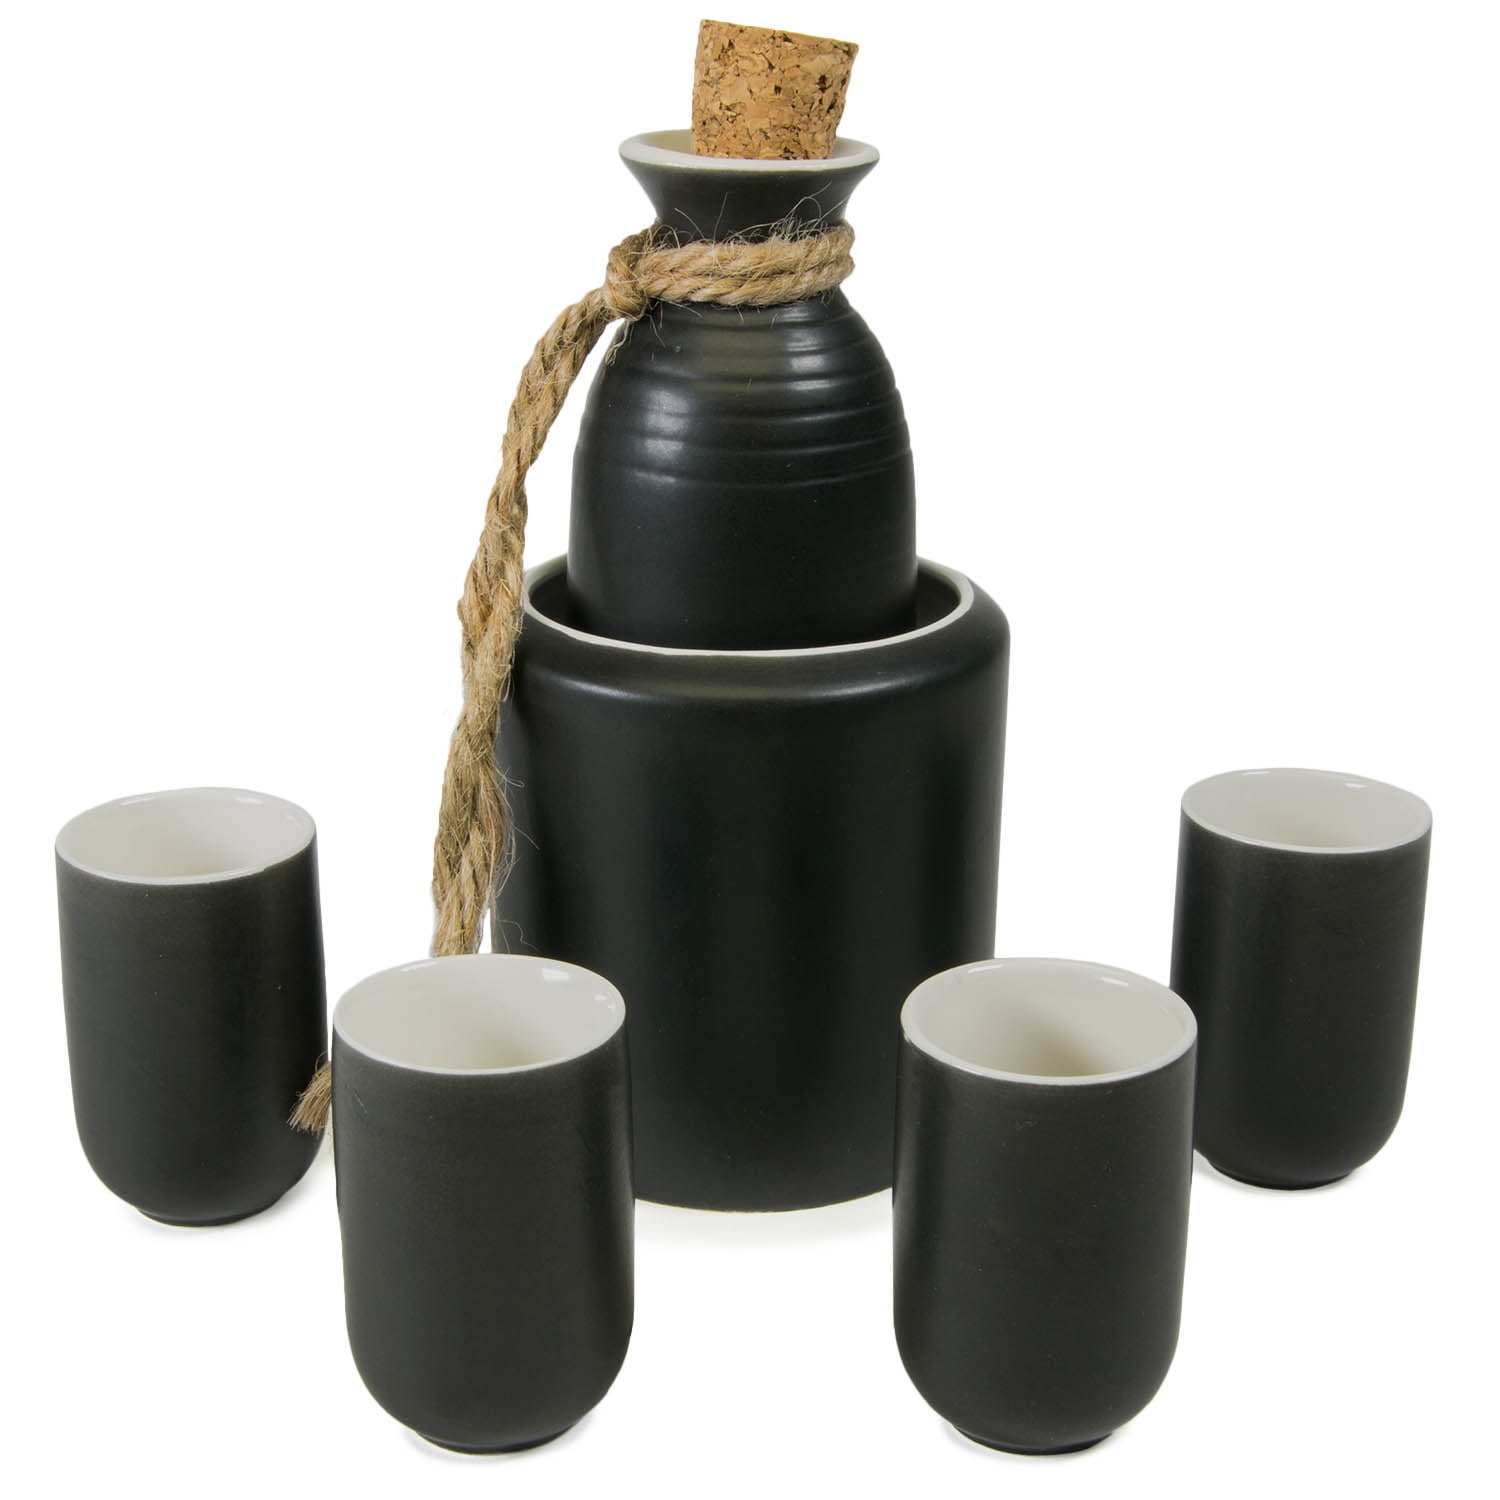 DOITOOL 4pcs/ Set Japanese Style Sake Set Glasses Sake Carafe with 3 Sake Cups for Warmer or Cold Japanese Sake Gift Sets 